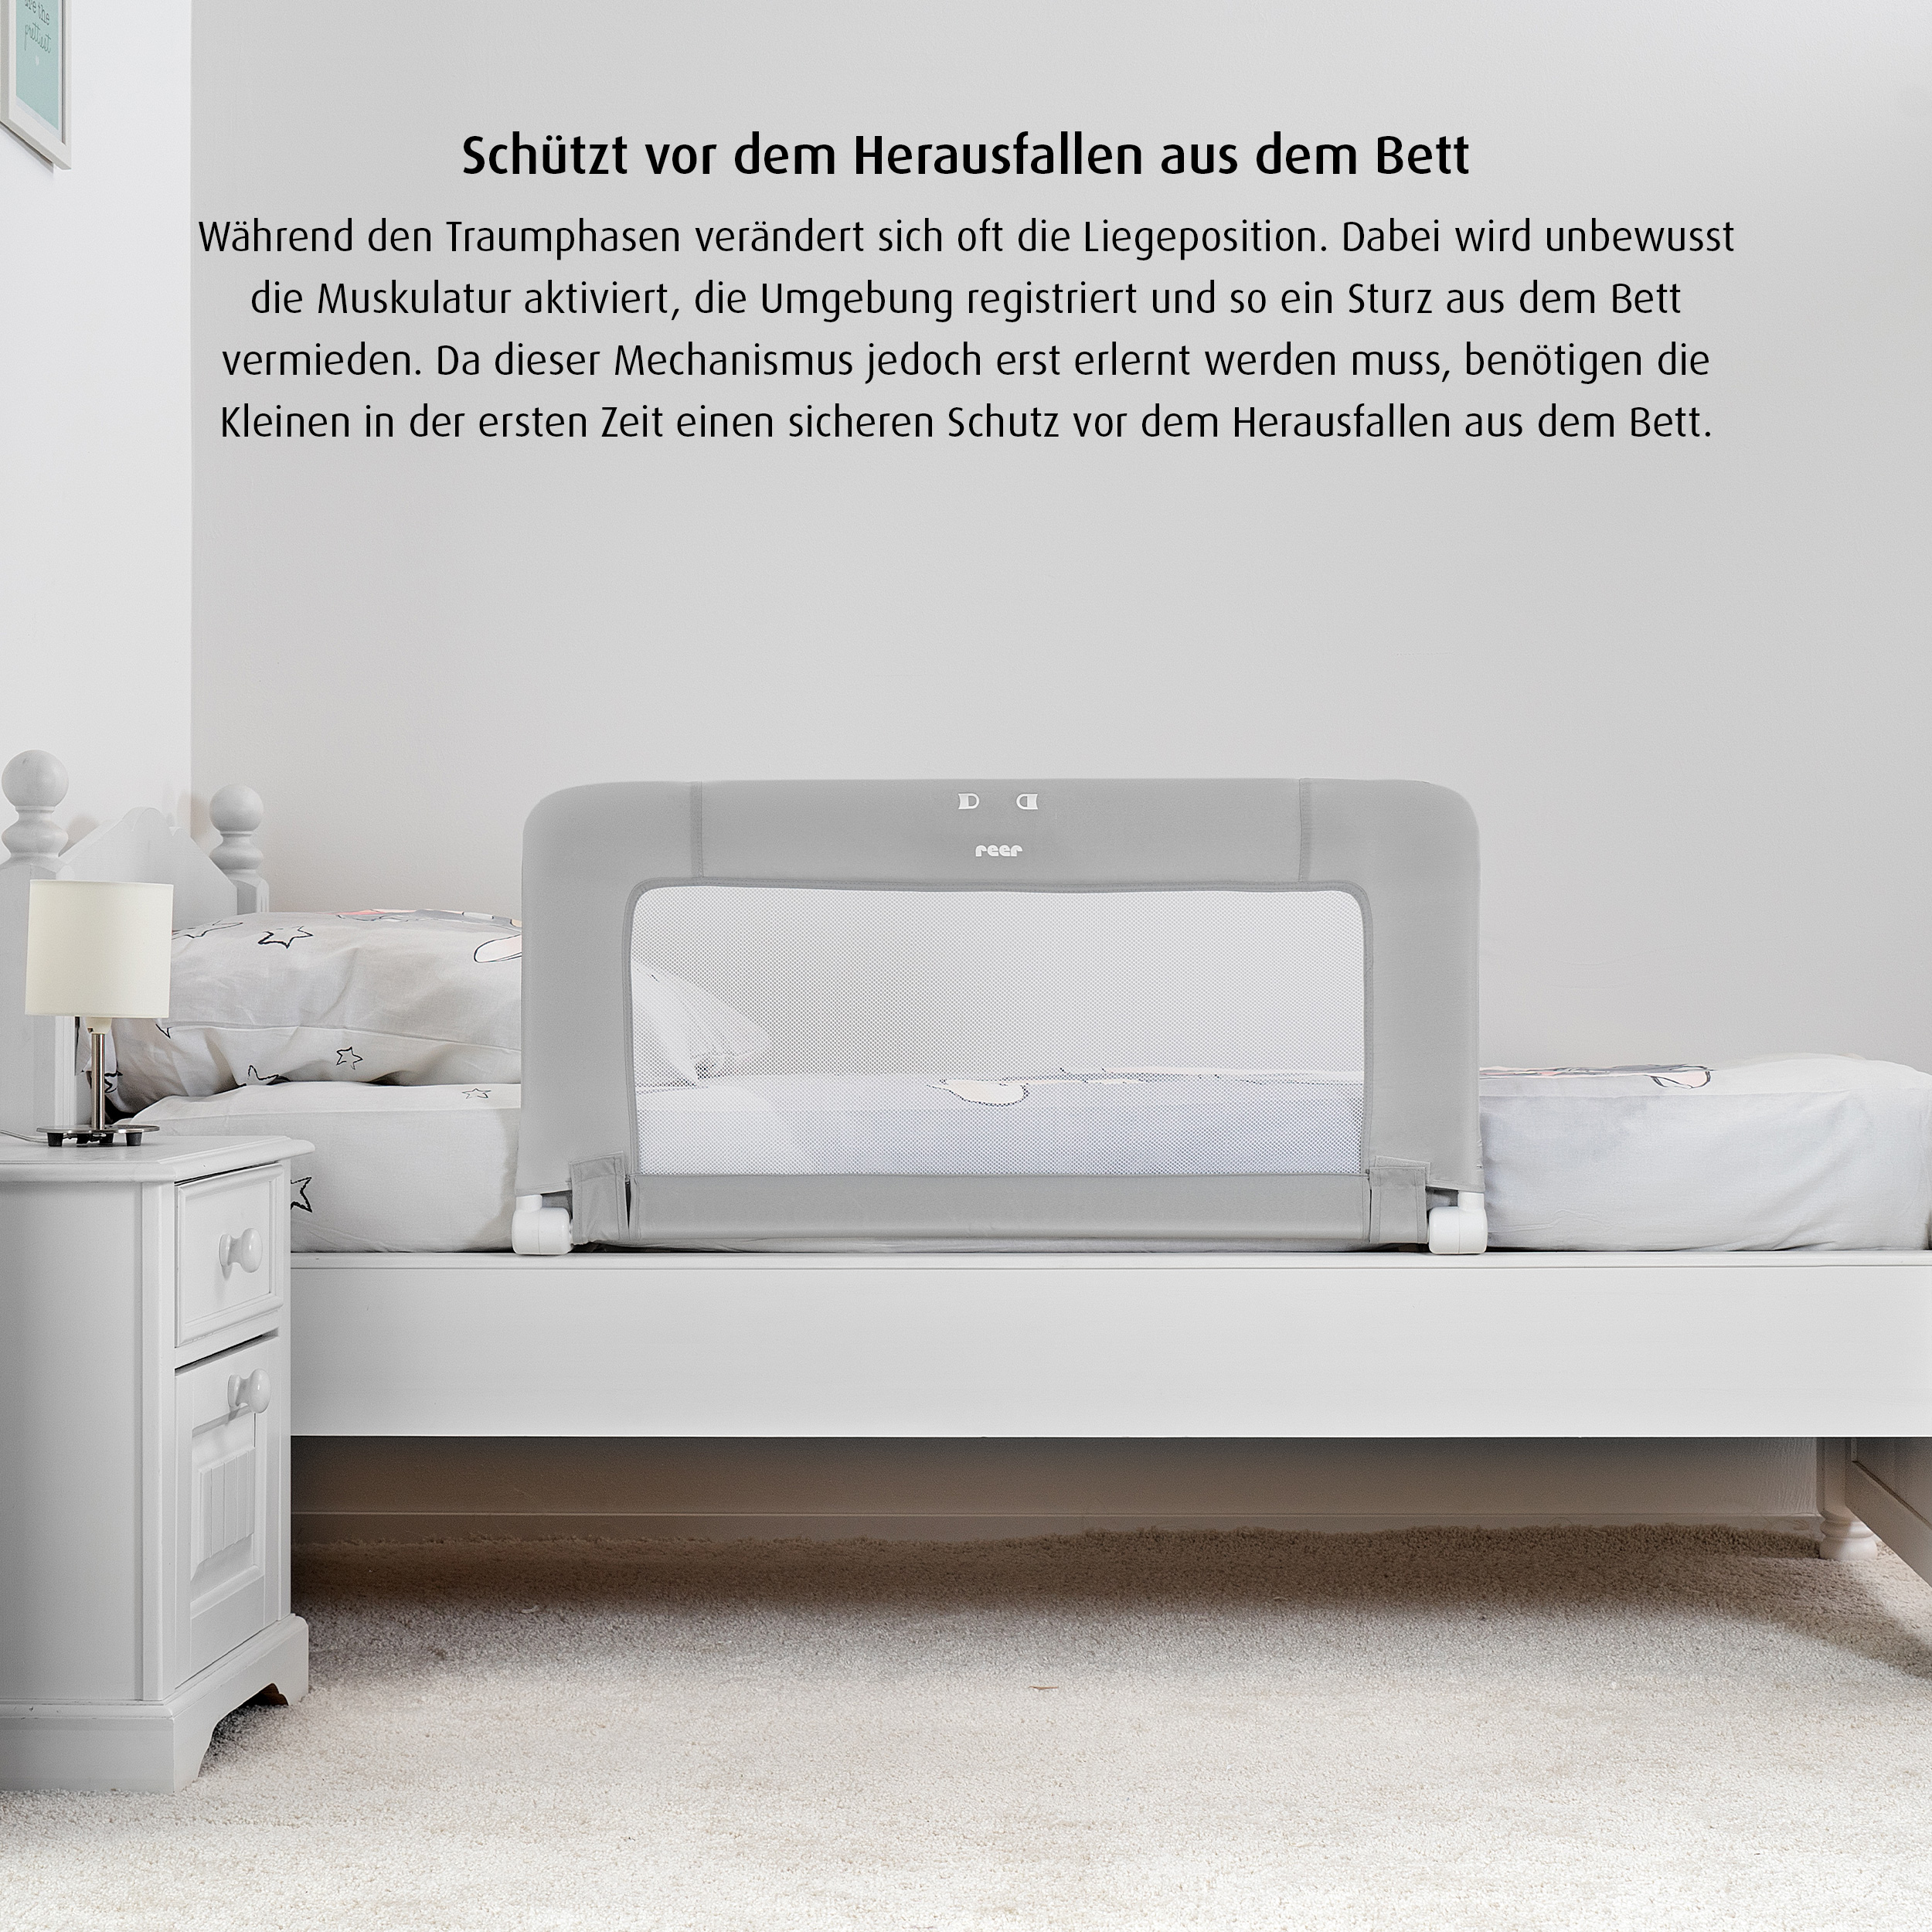 ByMySide Bettgitter für Betten 150 cm - 210 cm mit Abklappfunktion - geprüfte B-Ware